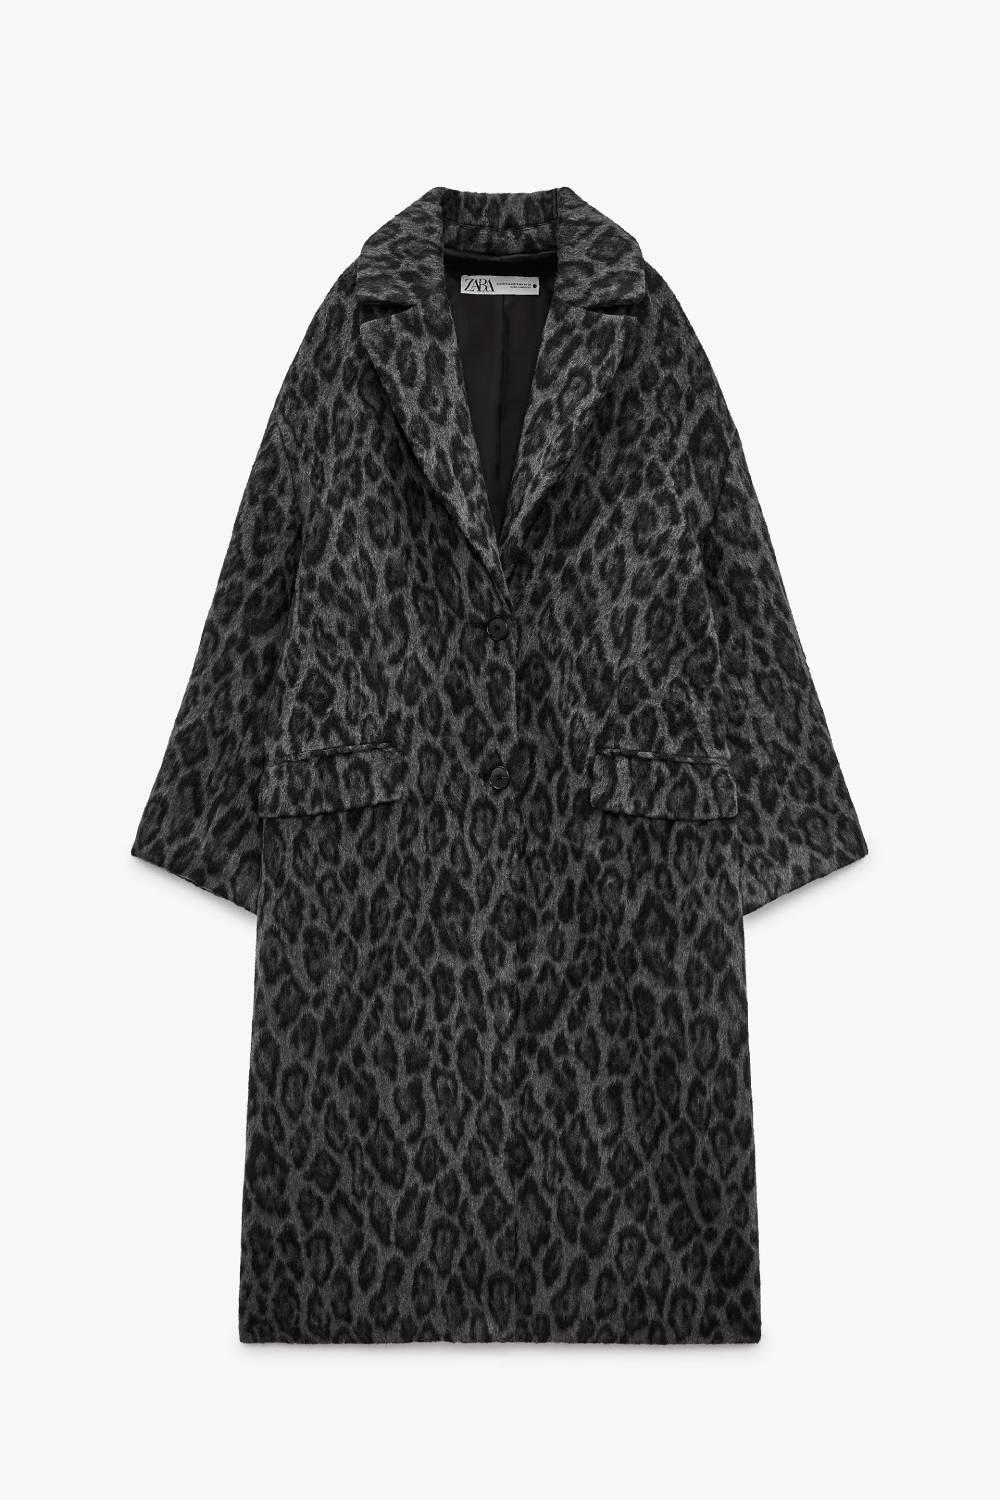 Abrigo gris con print de leopardo